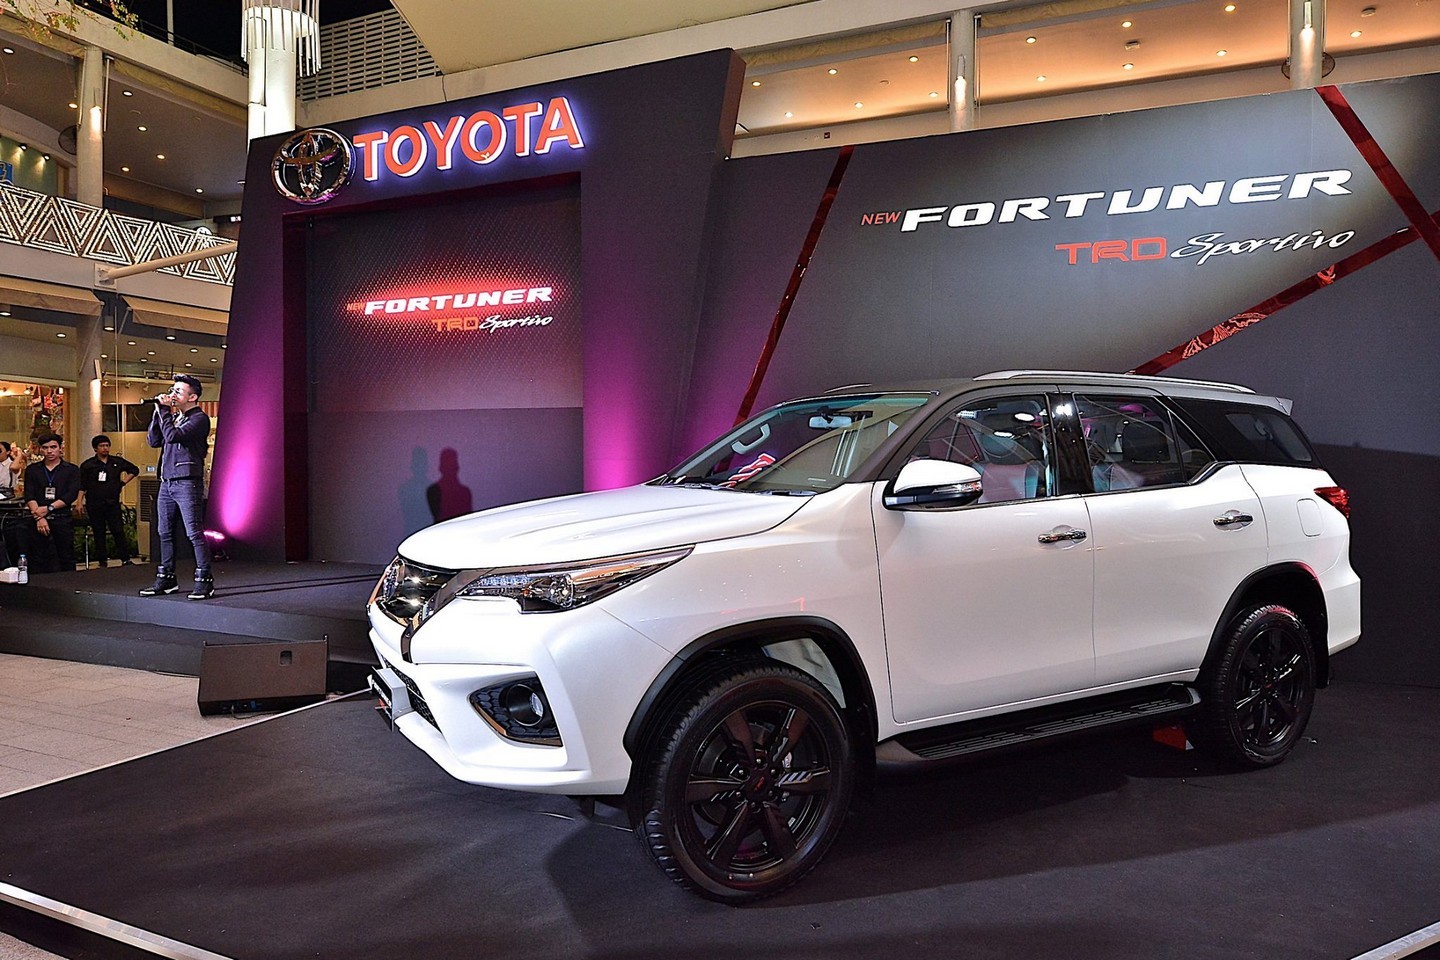 44 HQ Images Toyota Sport Suv 2021 / Ford vai lançar novo SUV no Brasil em 2021; conheça ...